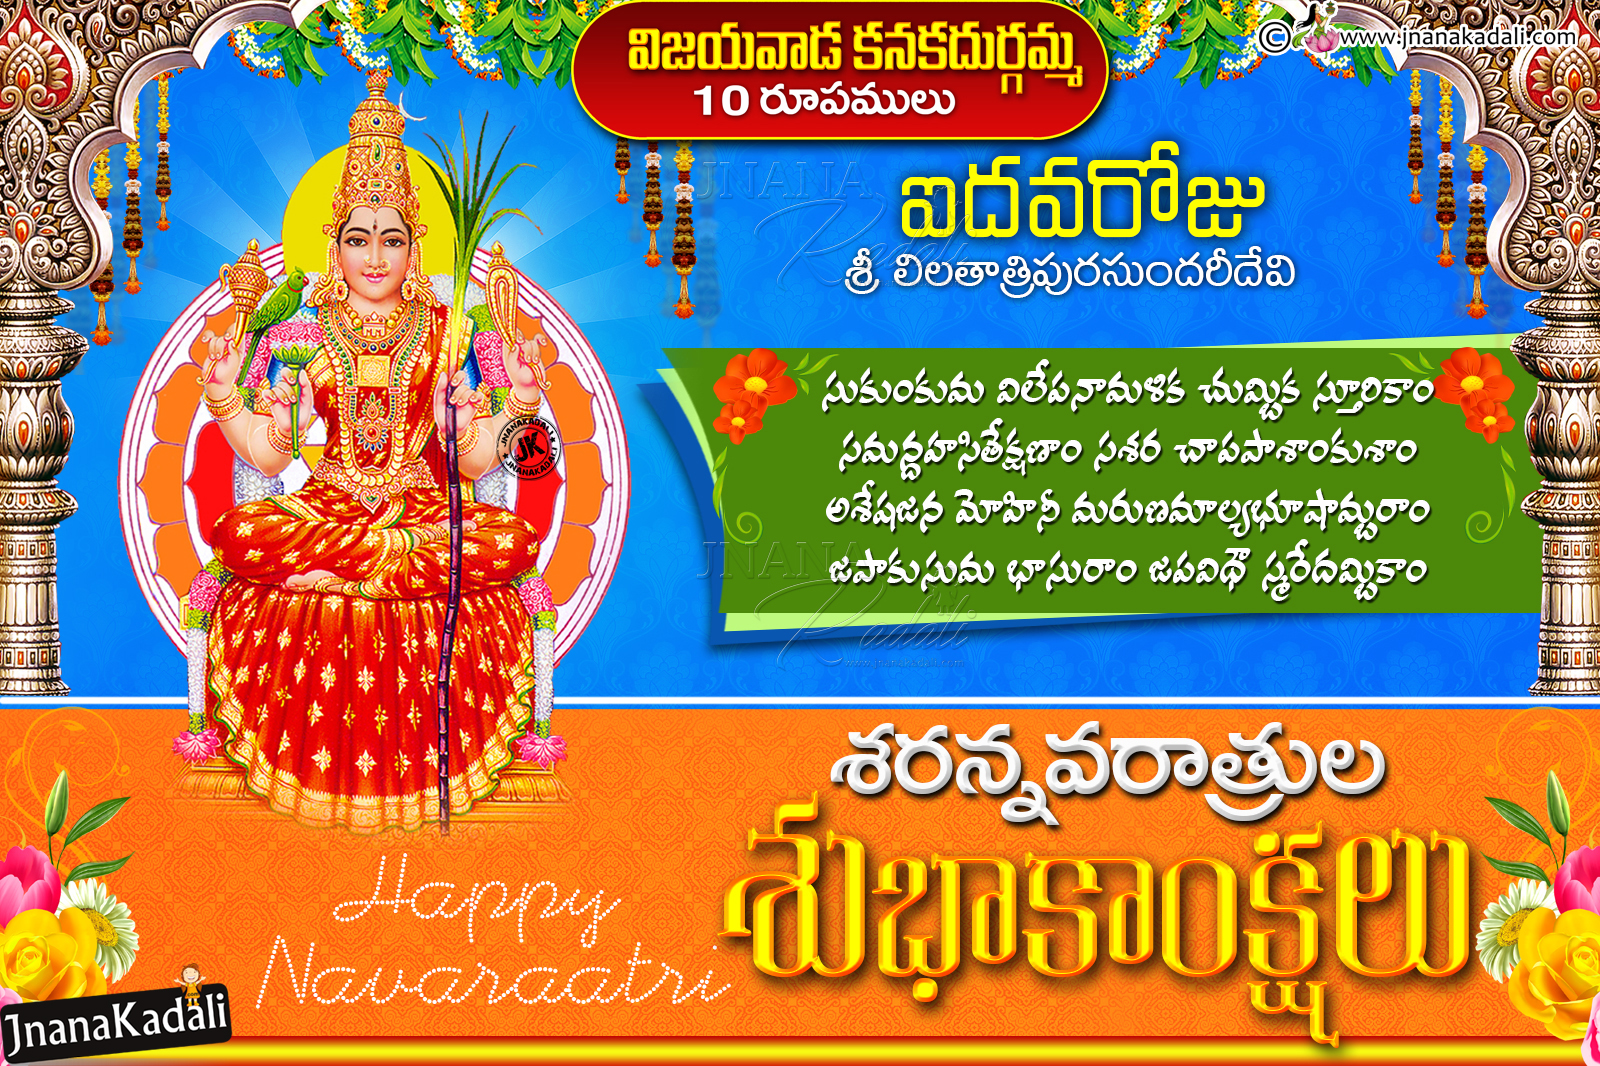 Vijayawada (Bezawada) Kanaka Durgamma 10 Roopaalu information in telugu